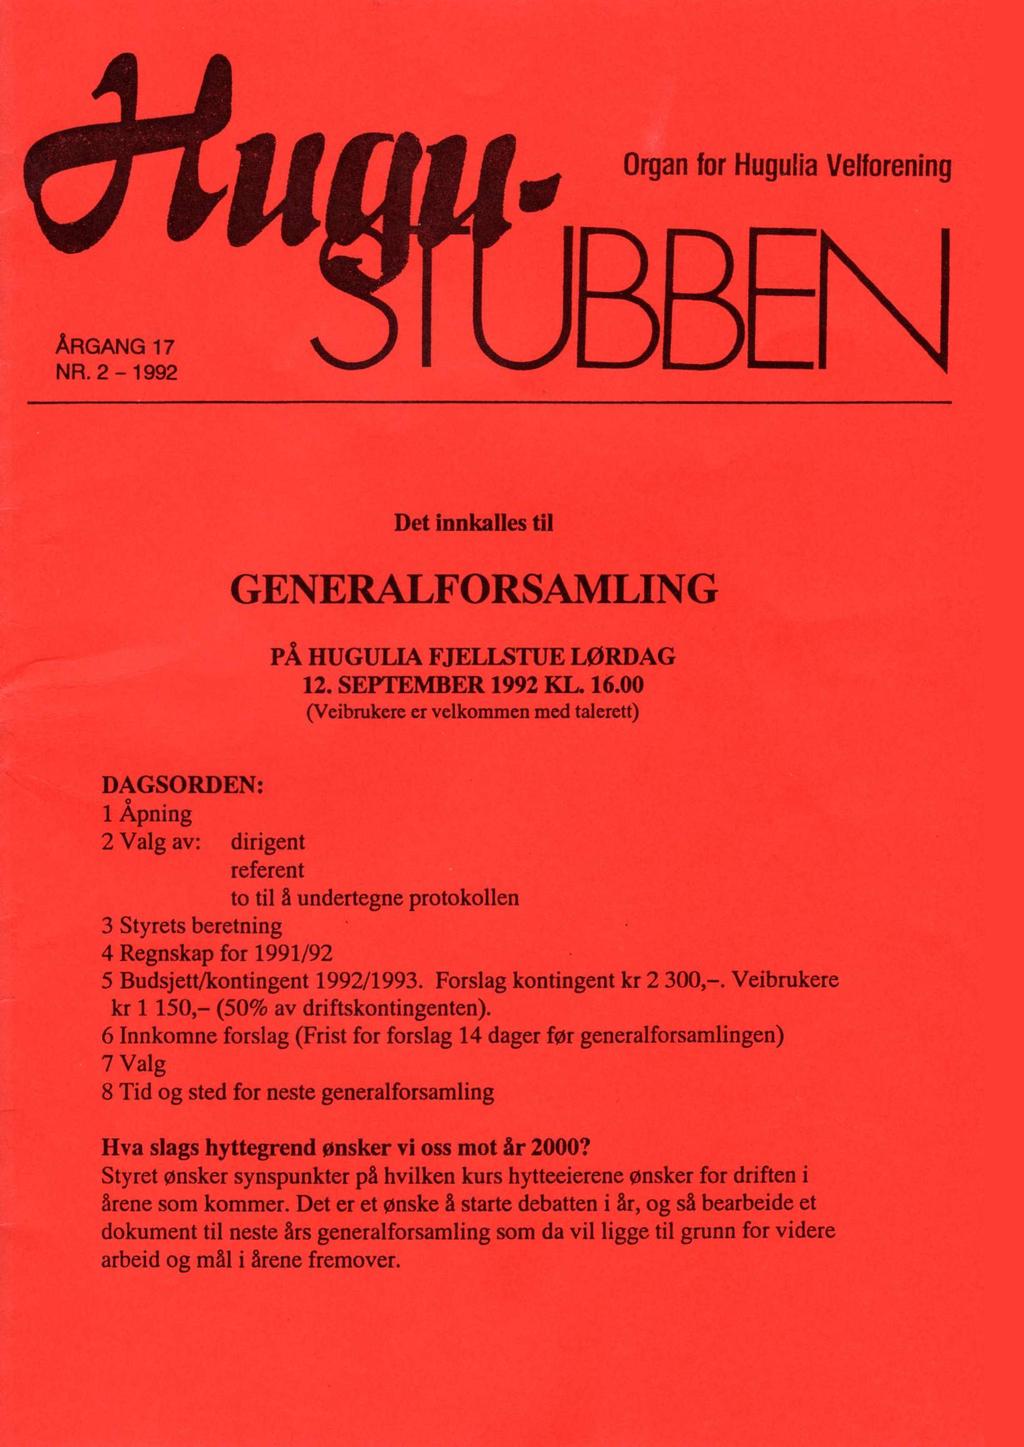 Det innkalles til GENERALFORSAMLING PÅ HUGULIA FJELLSTUE LØRDAG 12. SEPTEMBER 1992 KL. 16.